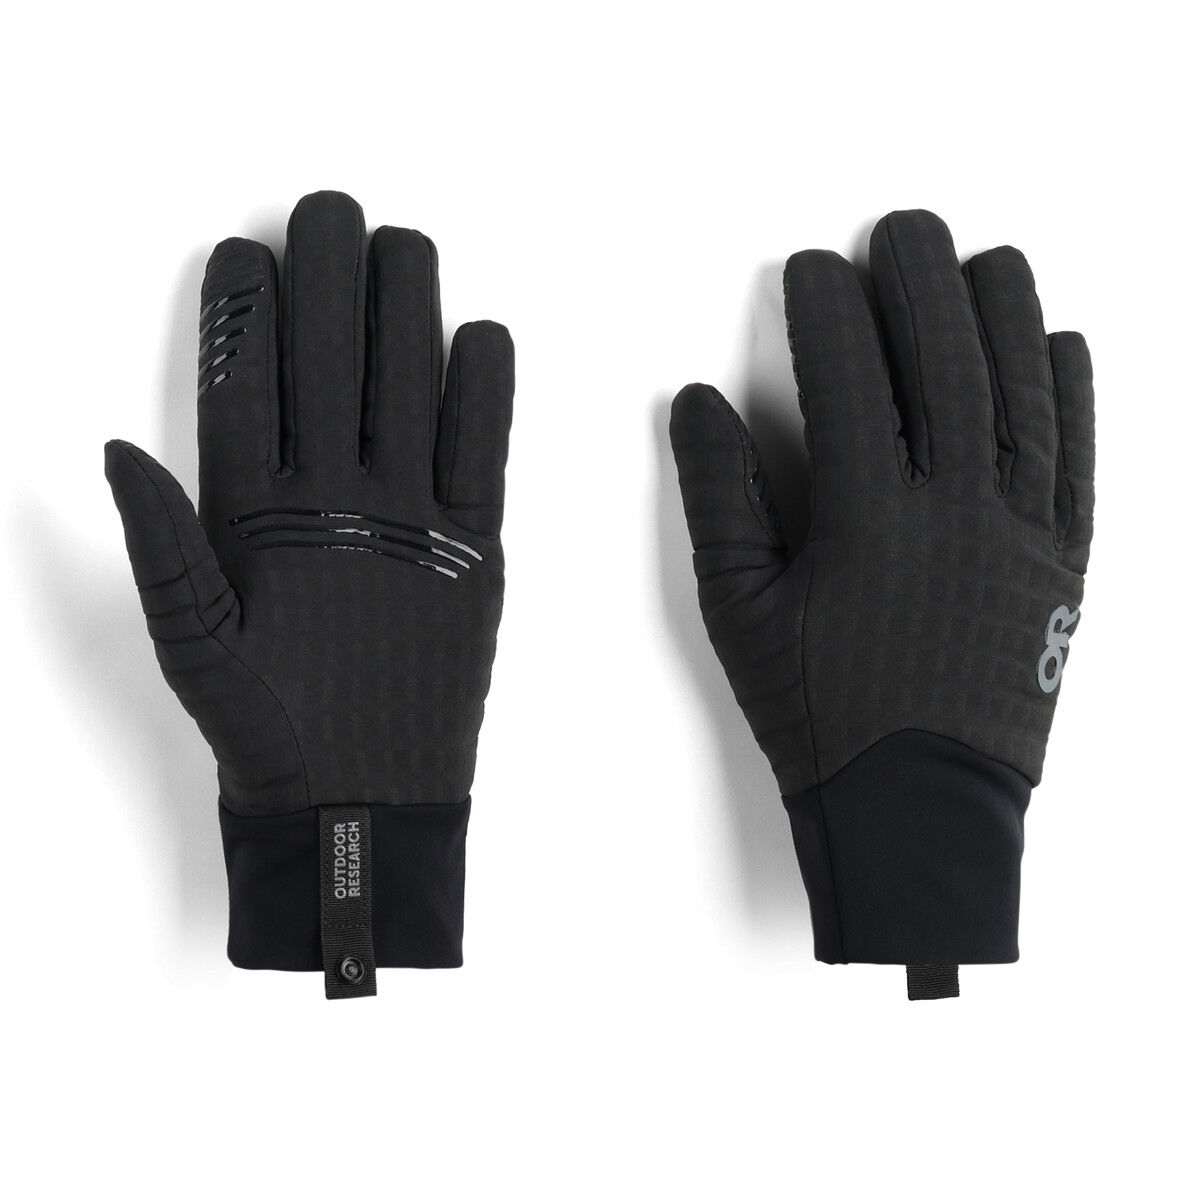 Vigor Heavyweight Sensor Gloves - Hiking gloves - Men's